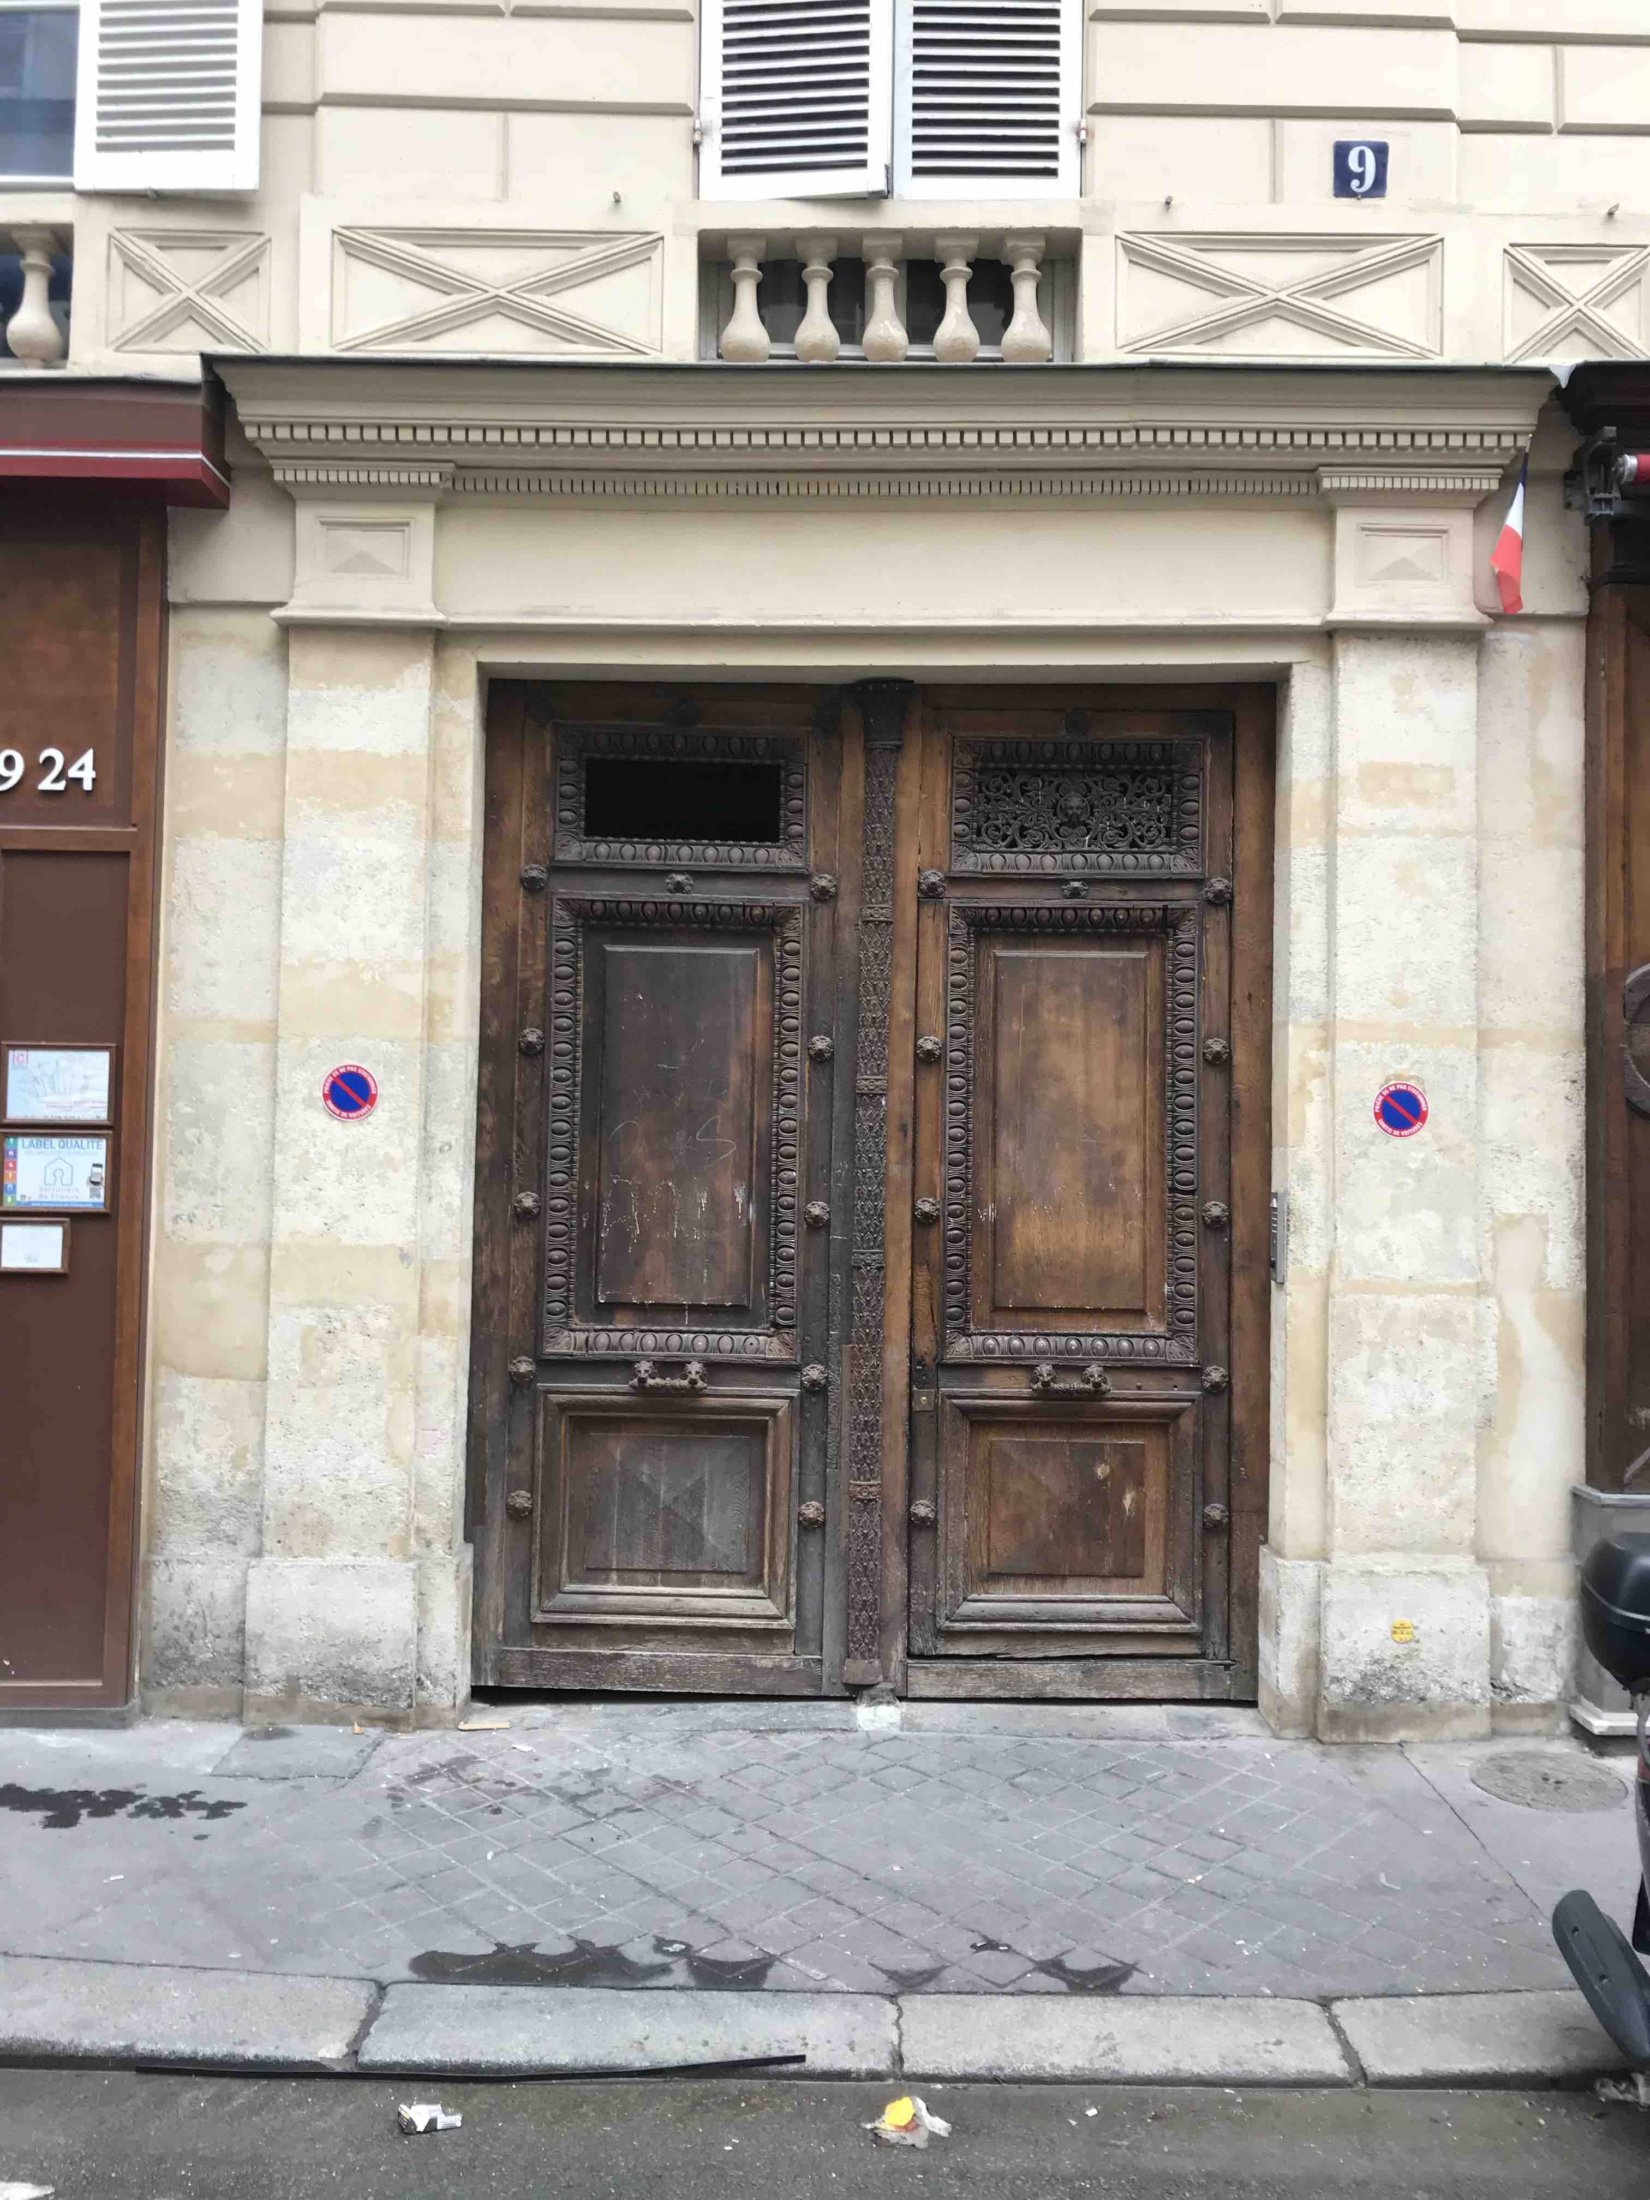 Porte Cochère Style Restauration - 9 RUE DU GRAND PRIEURE PARIS 11